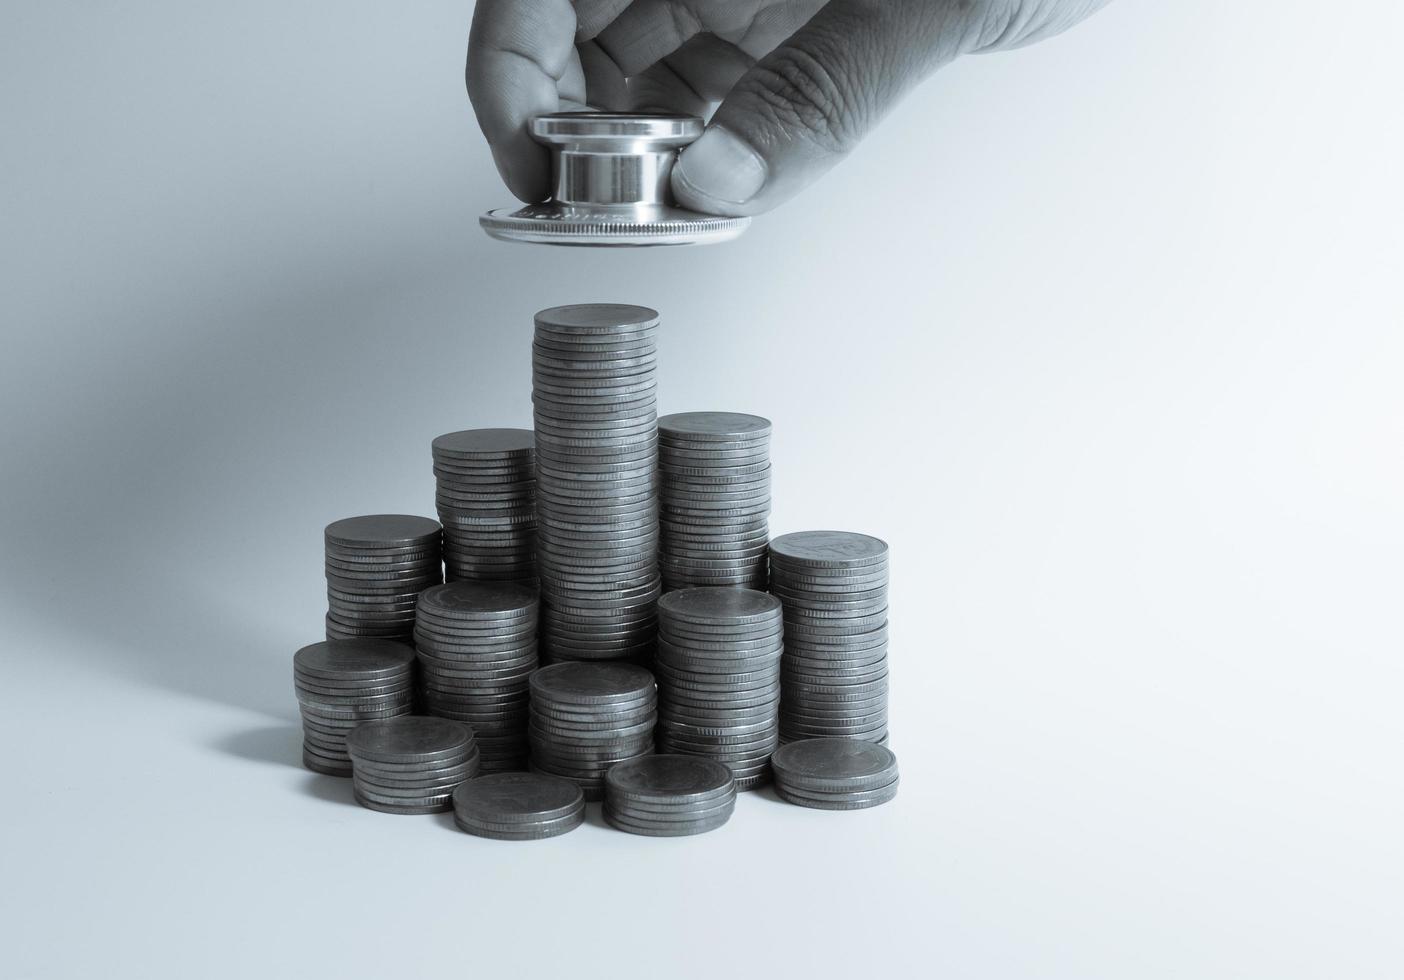 estetoscopio en pila de monedas, sobre fondo blanco. dinero para atención médica, ayuda financiera, concepto foto